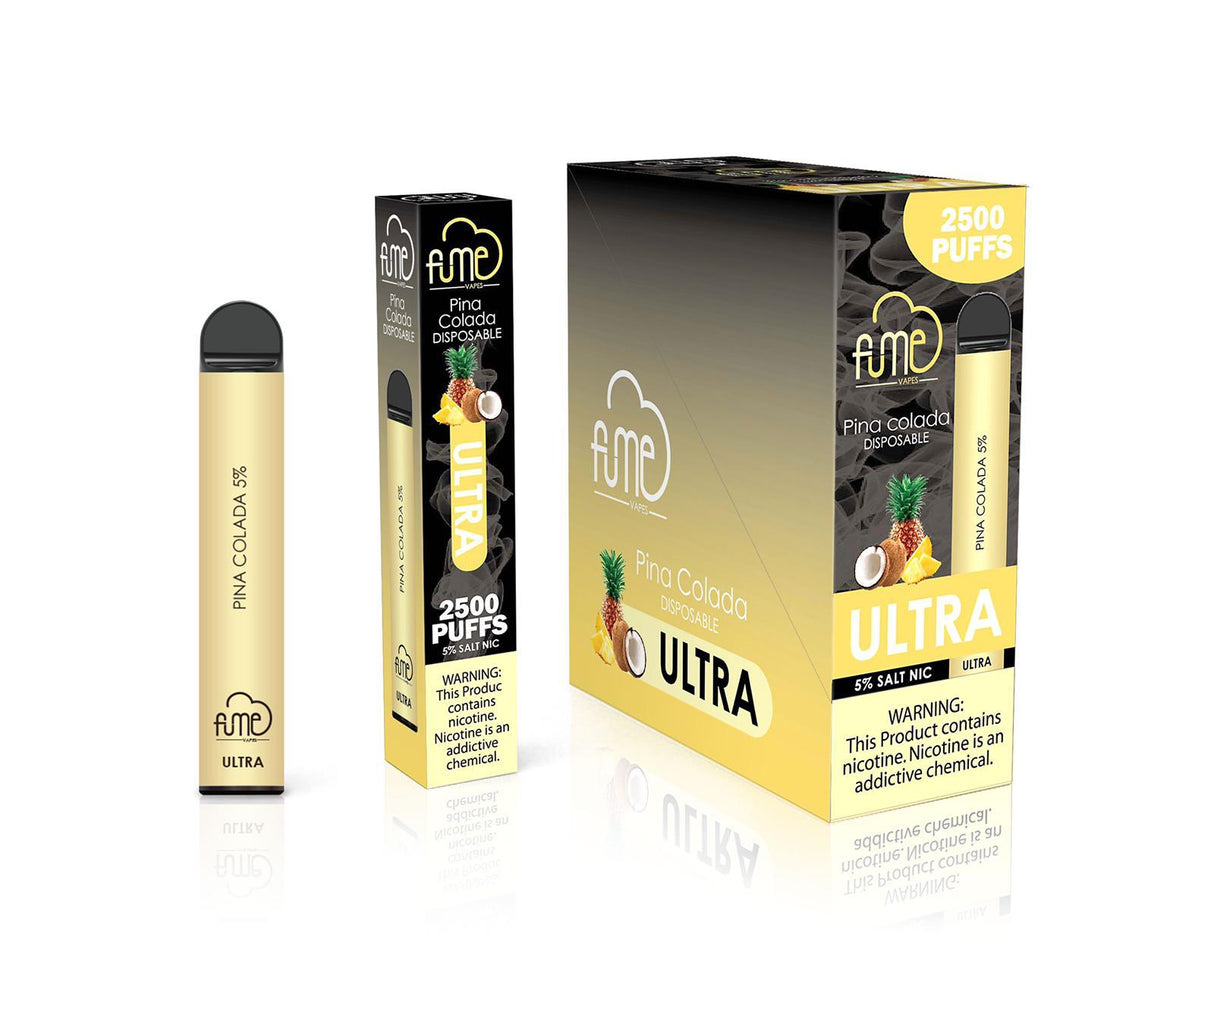 Fume Ultra Pina colada Flavor - Disposable Vape